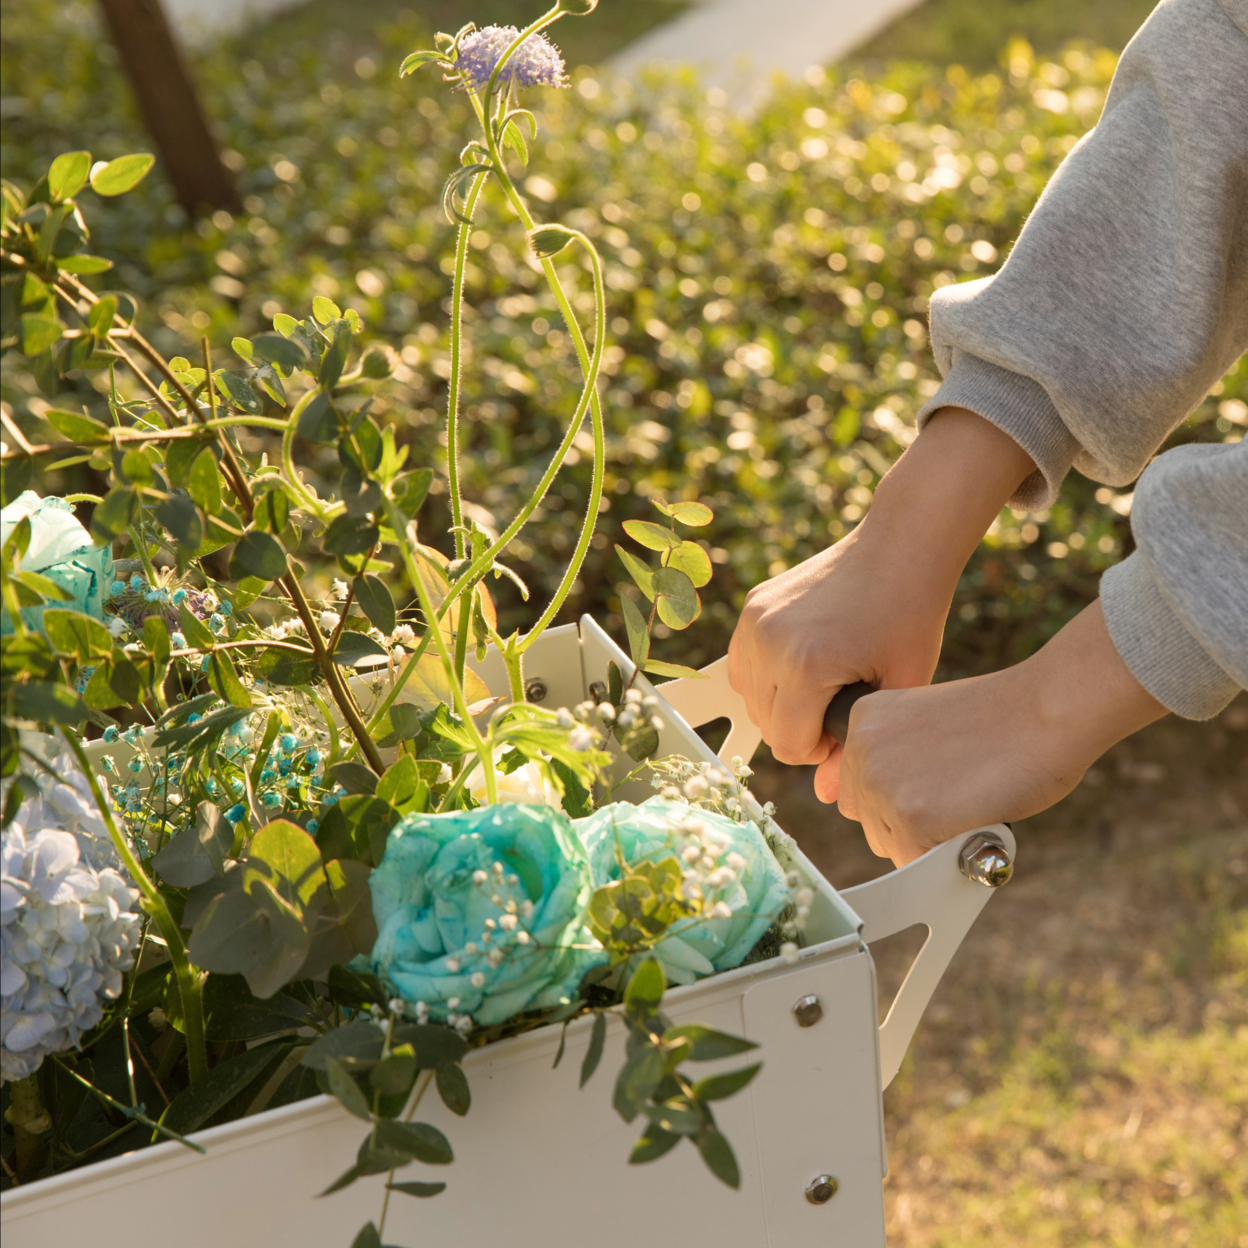 Mobile Planter Raised Garden Bed Rectangular Flower Cart With Shelf